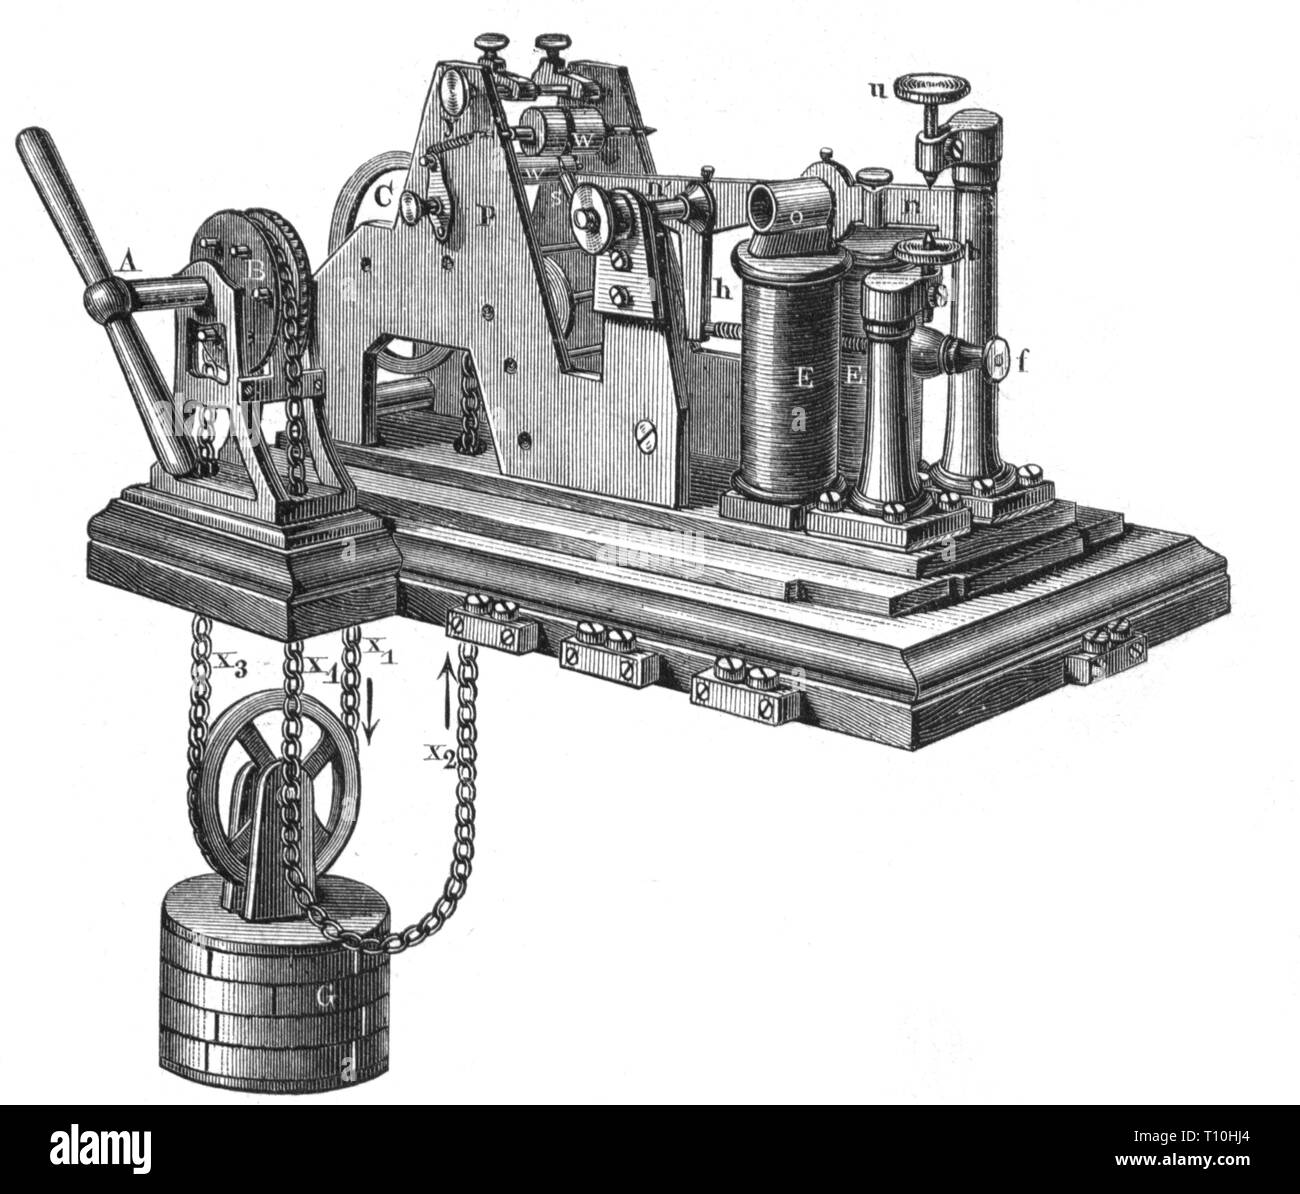 Mail, di telegrafia, single-wire telegrafo di Siemens e Halske, Berlino, 1850, artista del diritto d'autore non deve essere cancellata Foto Stock